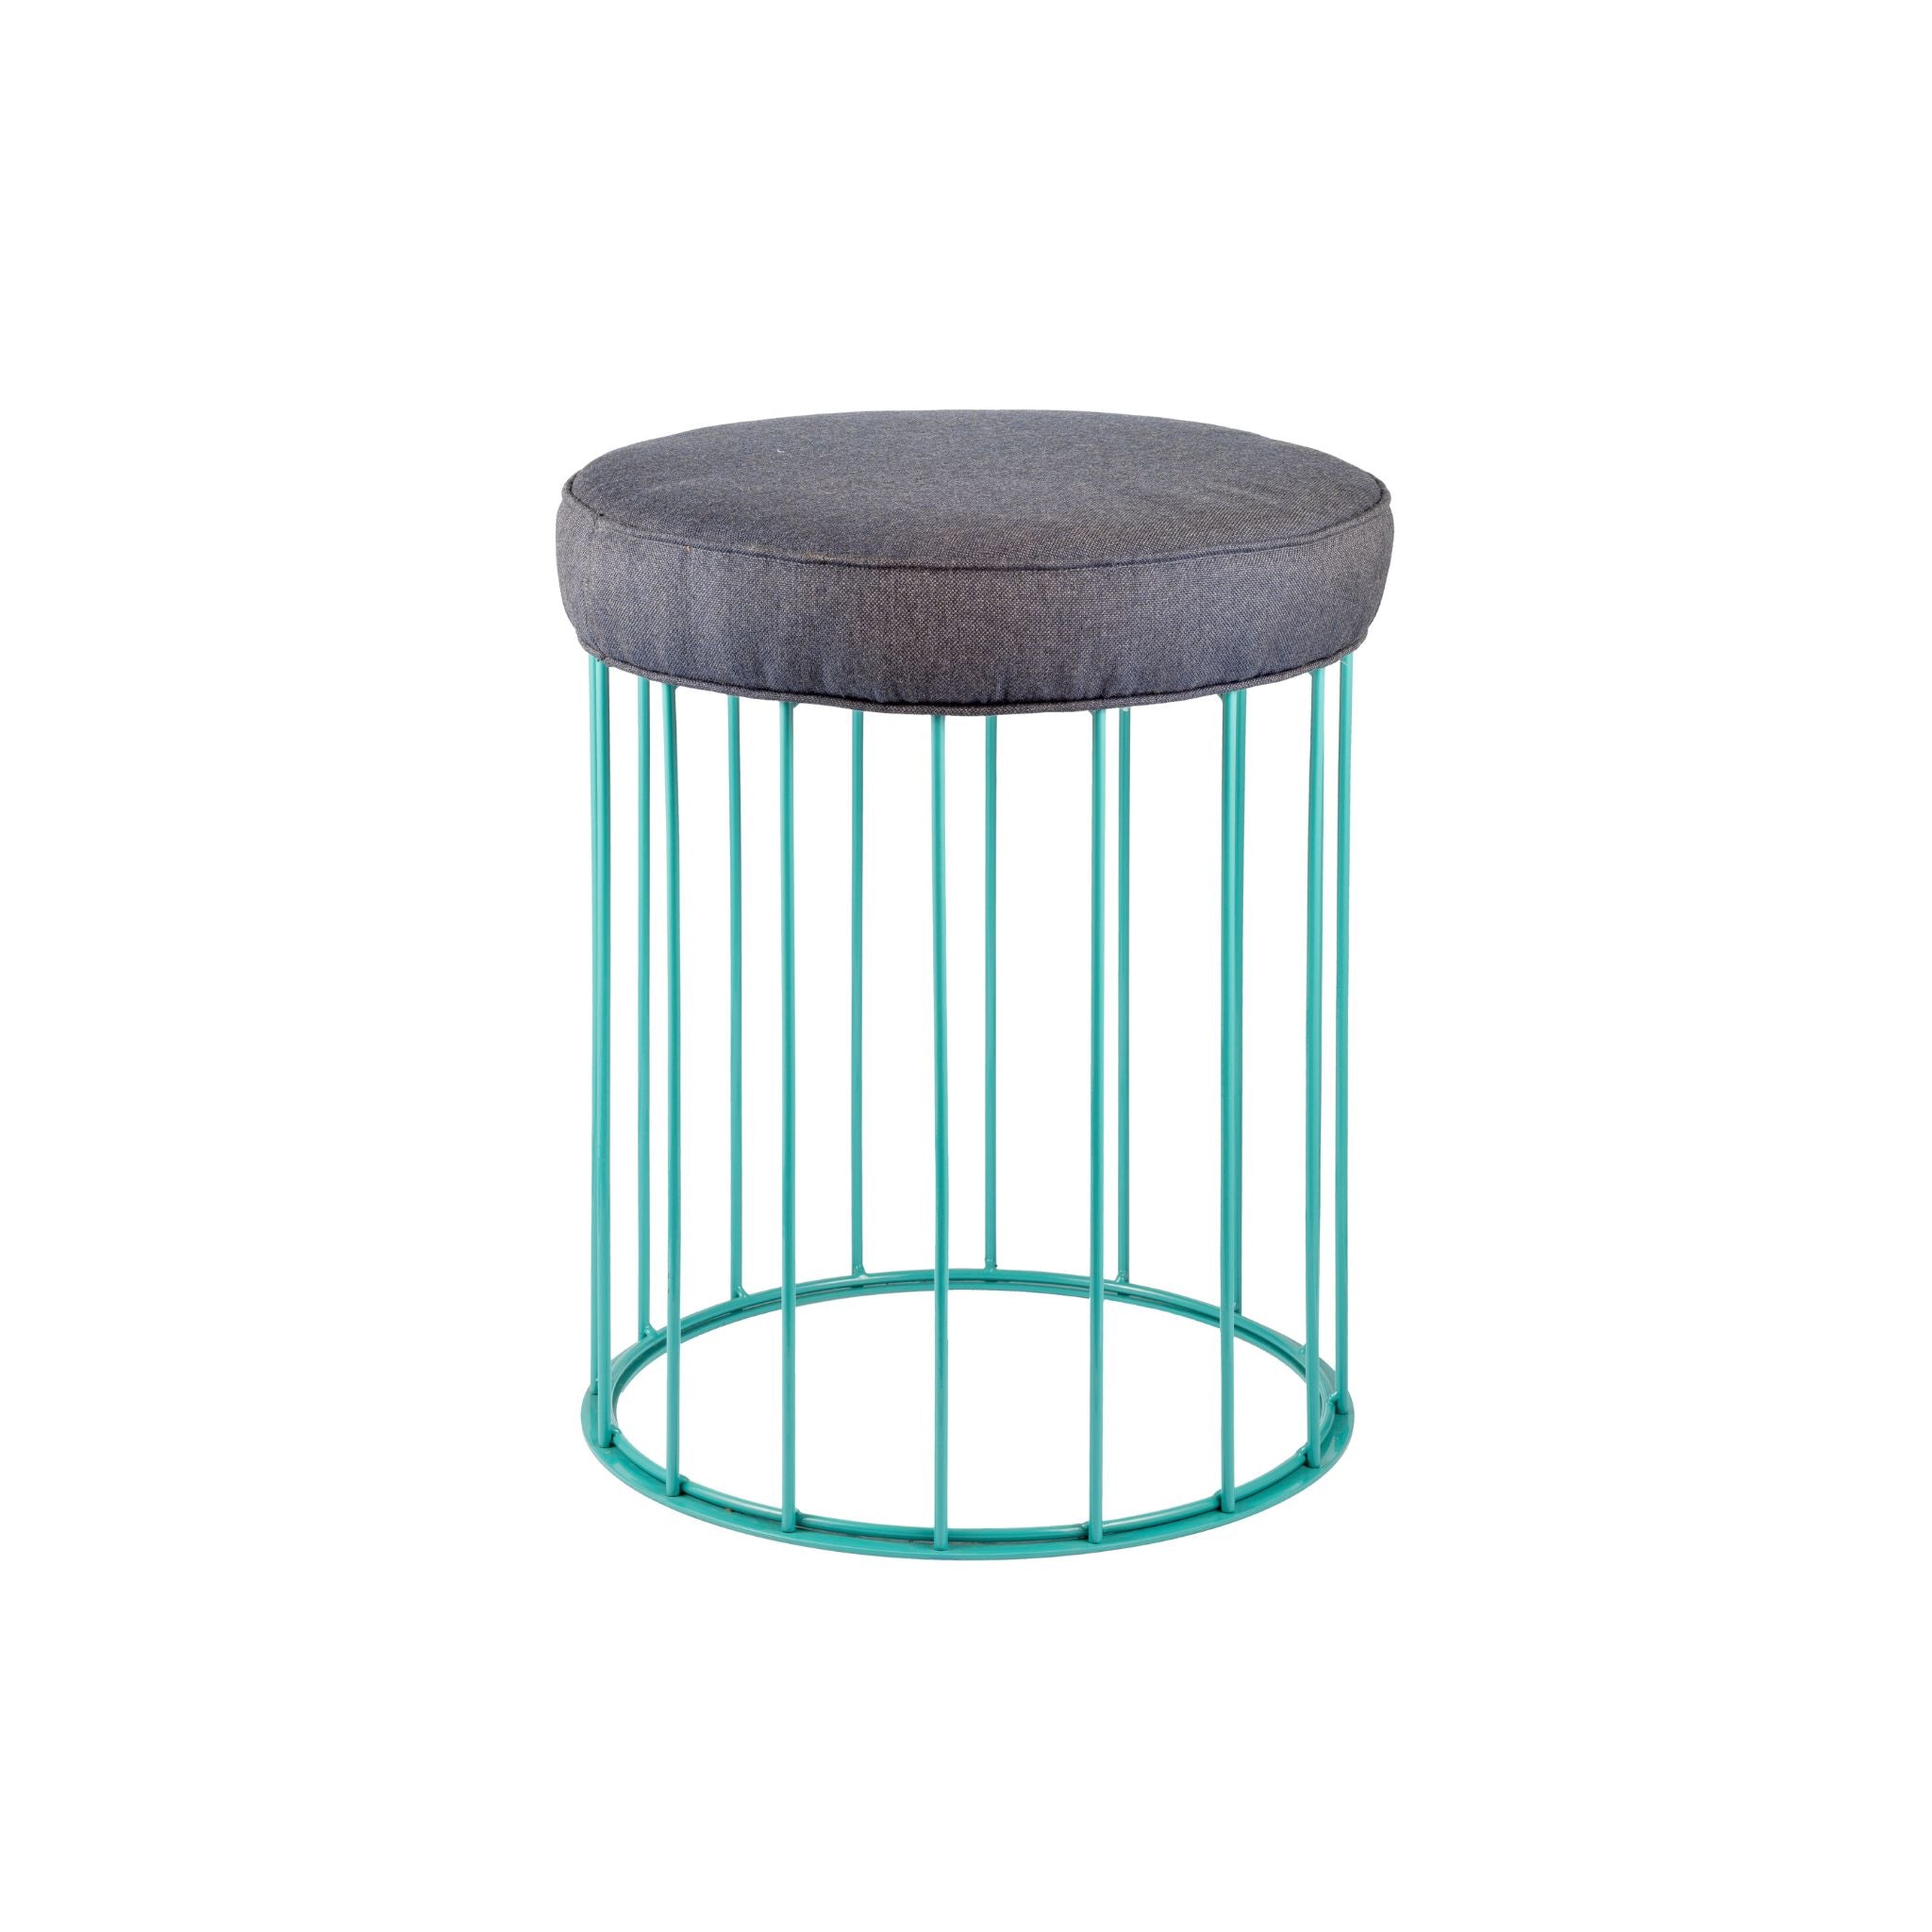 Sgabello Cage in ferro blu turchese - ilbronzetto